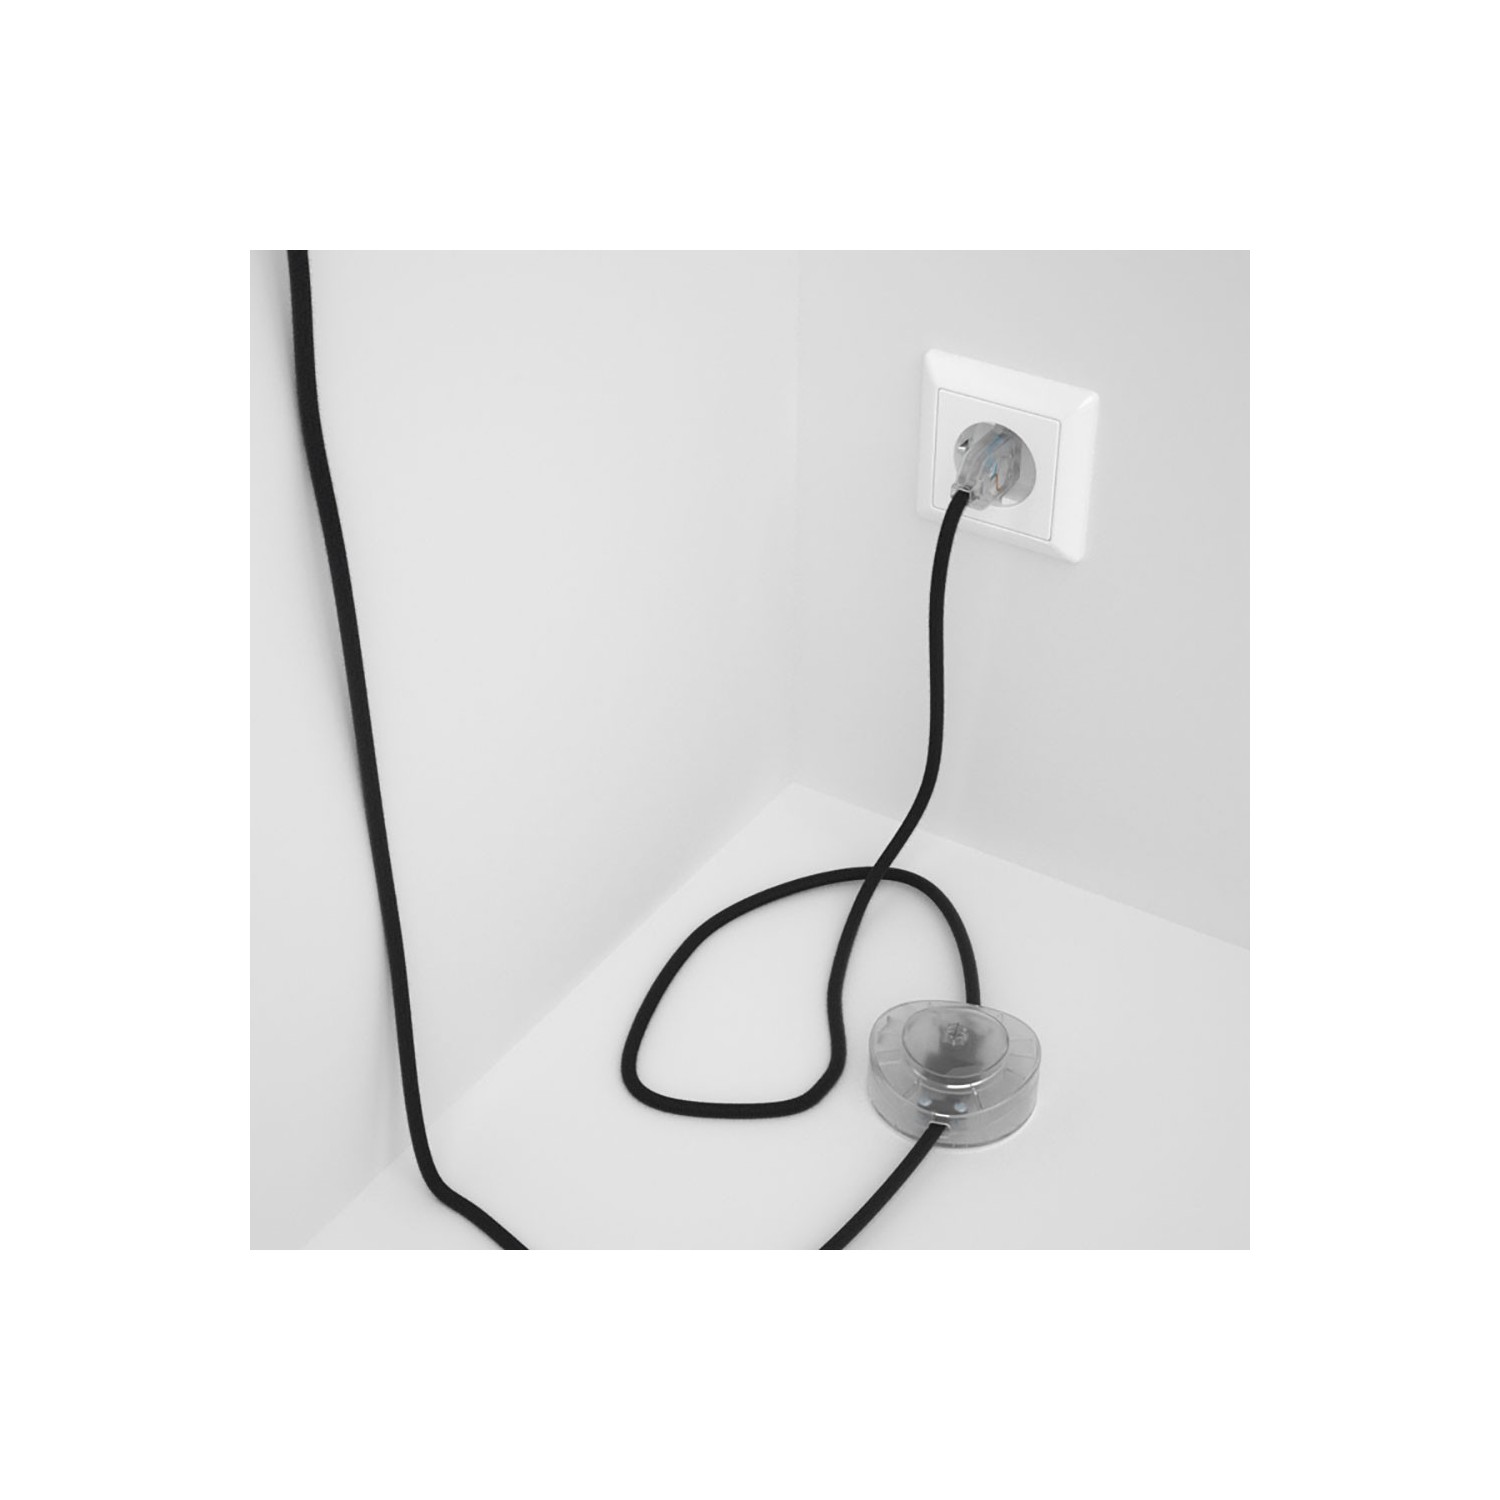 Cableado para lámpara de pie, cable RC04 Algodón Negro 3 m. Elige tu el color de la clavija y del interruptor!